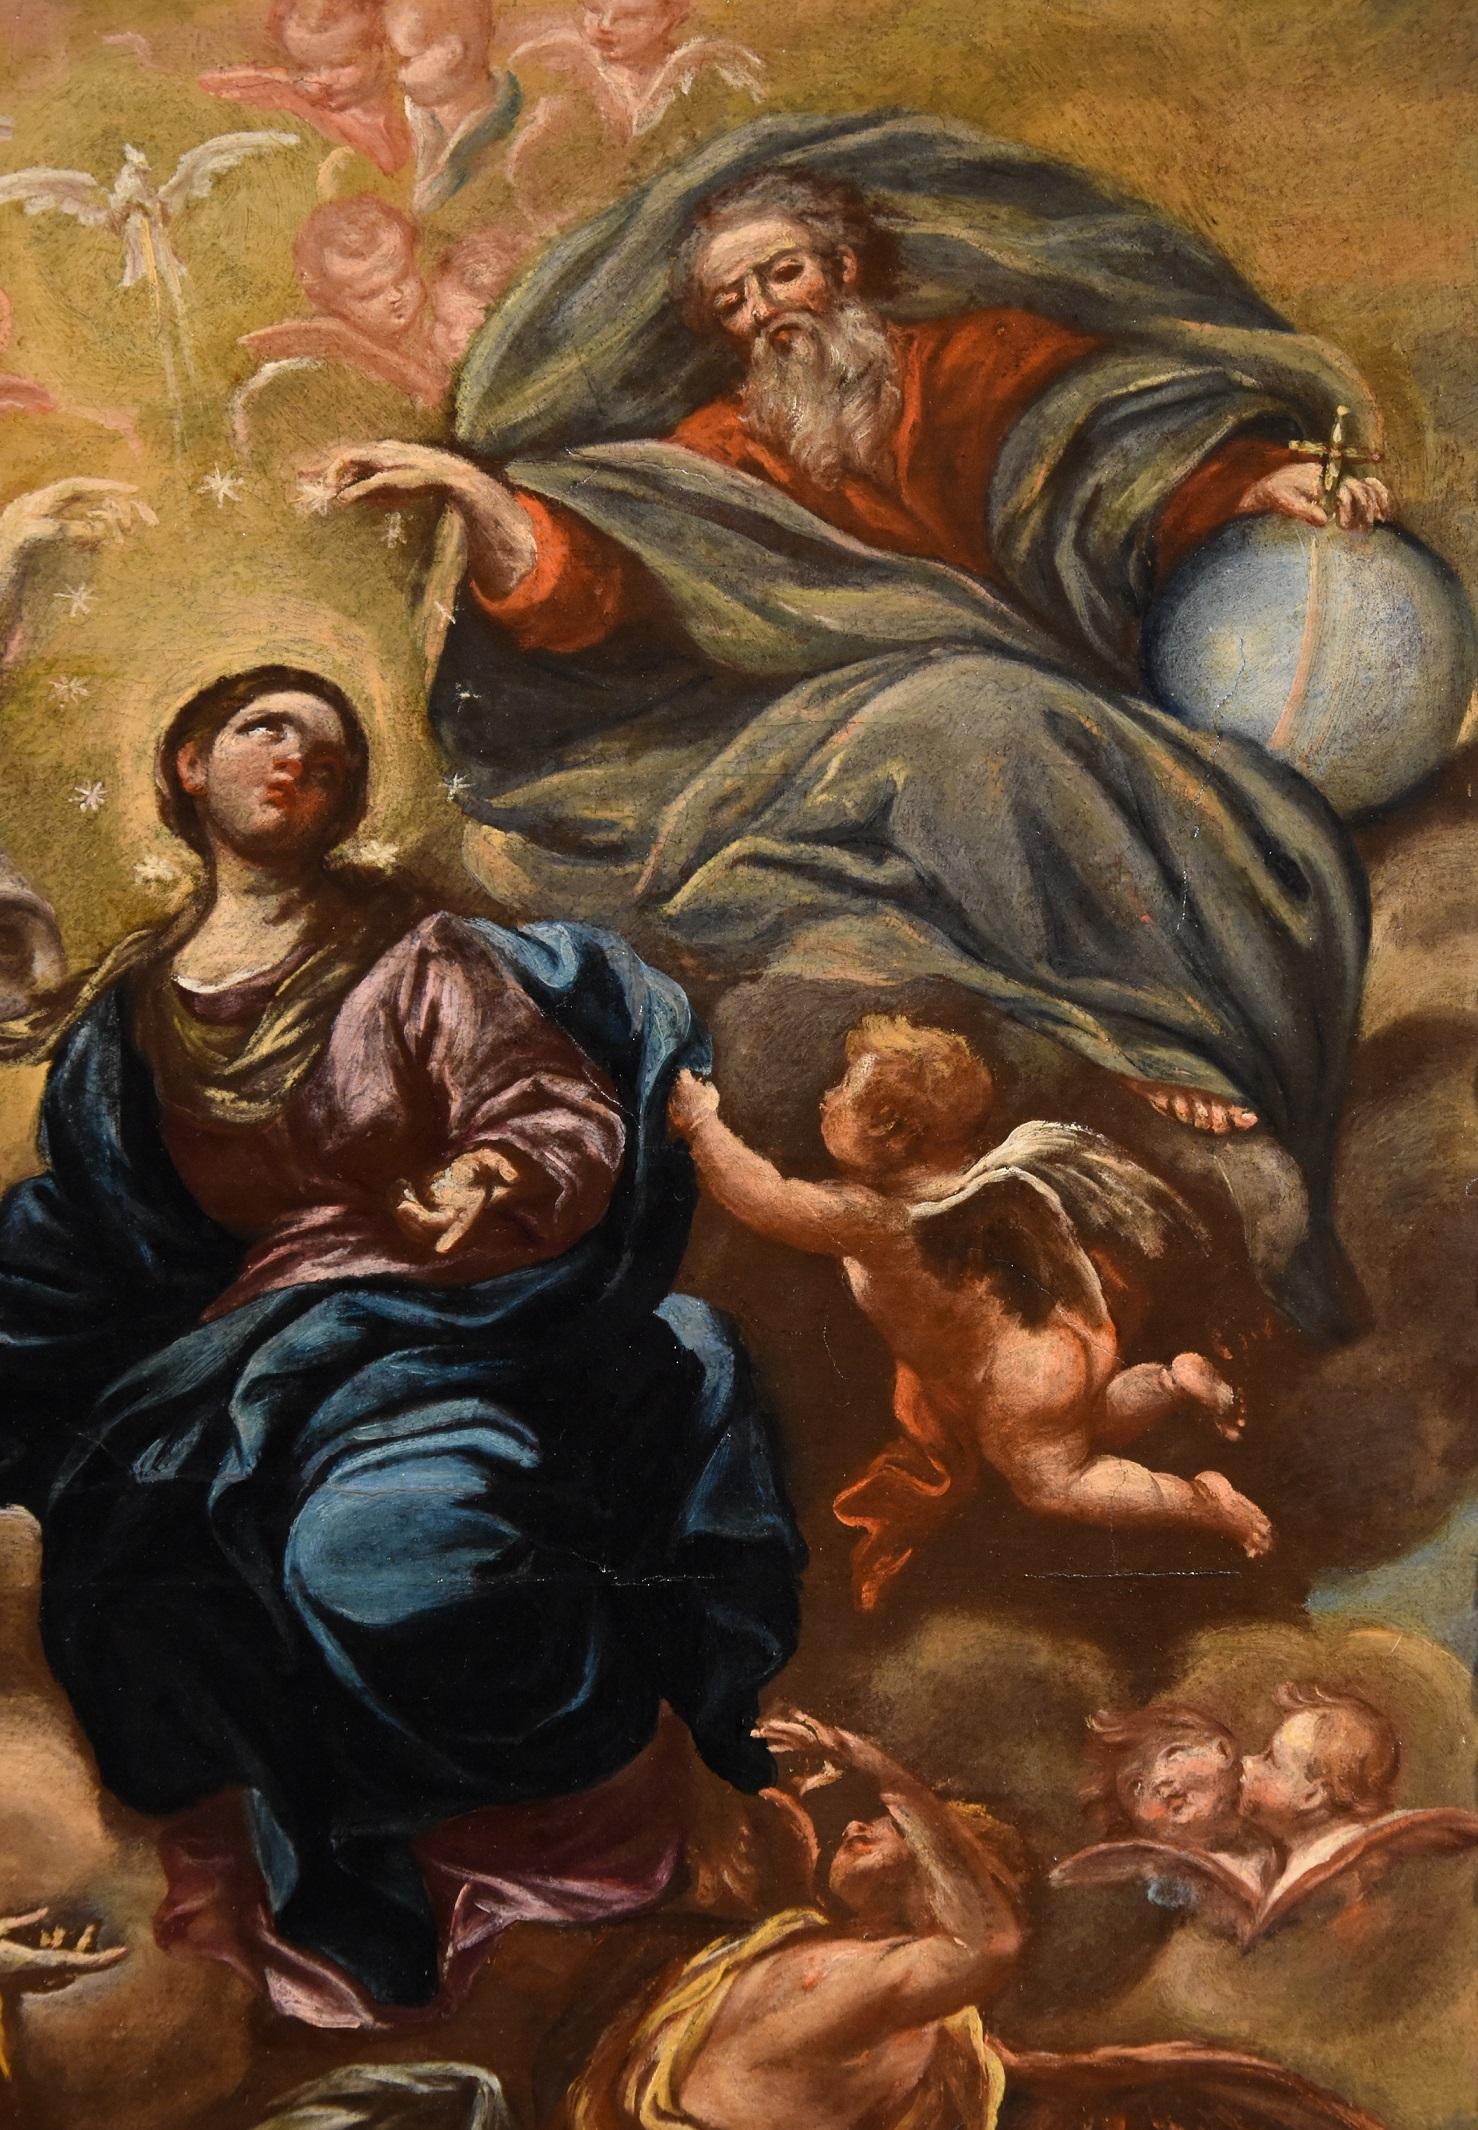 Virgin De Caro Paint Oil on camvas Old master 18th Century Religious Italian Art 2